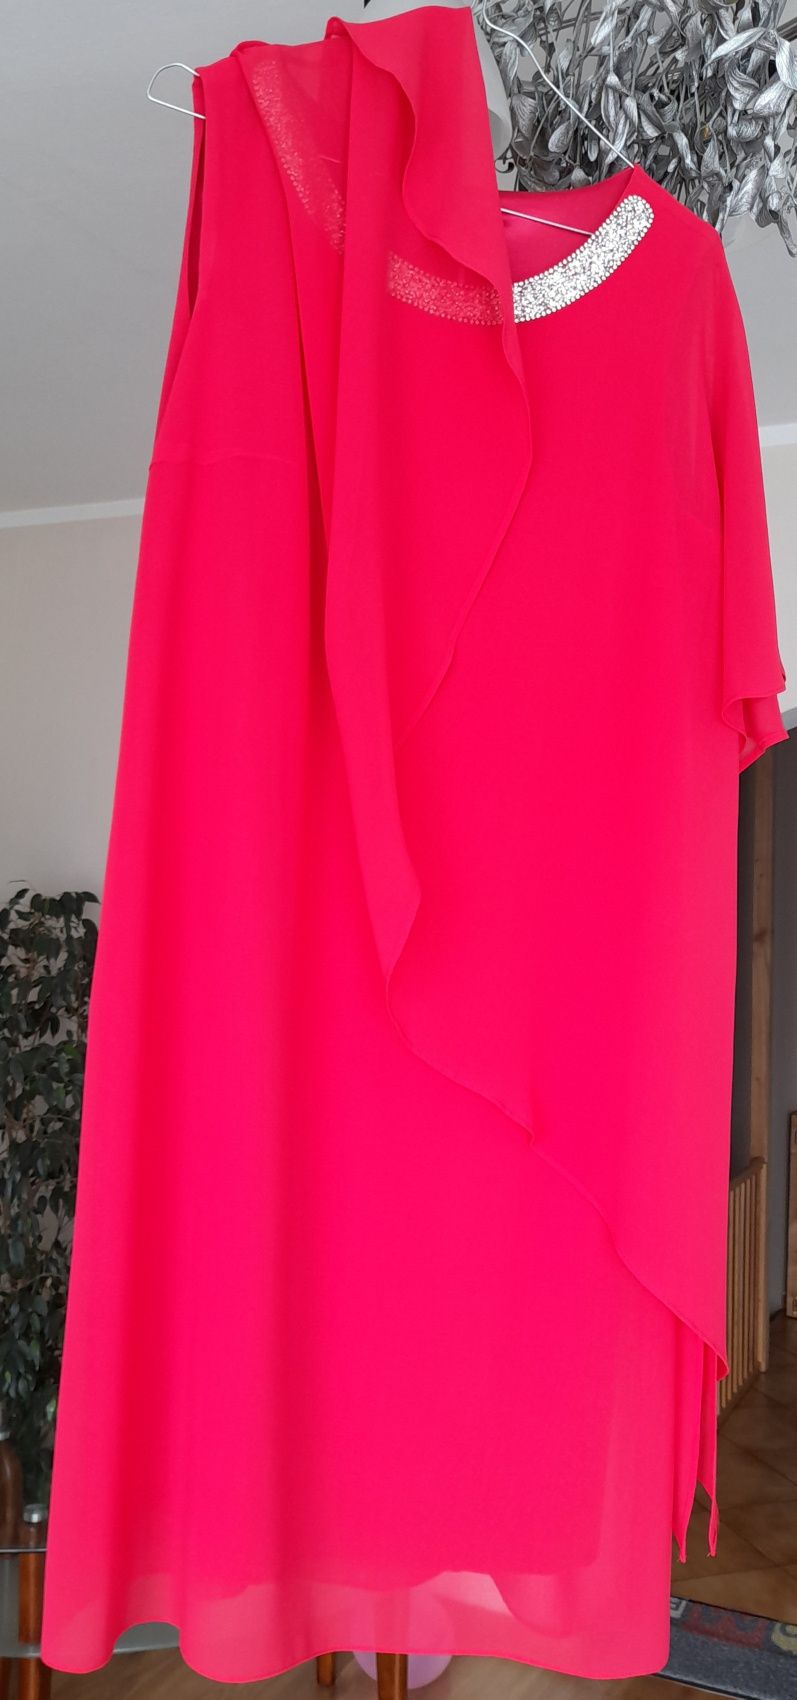 Nowa szyfonowa sukienka malinowa, różowa. Komunia, wesele.